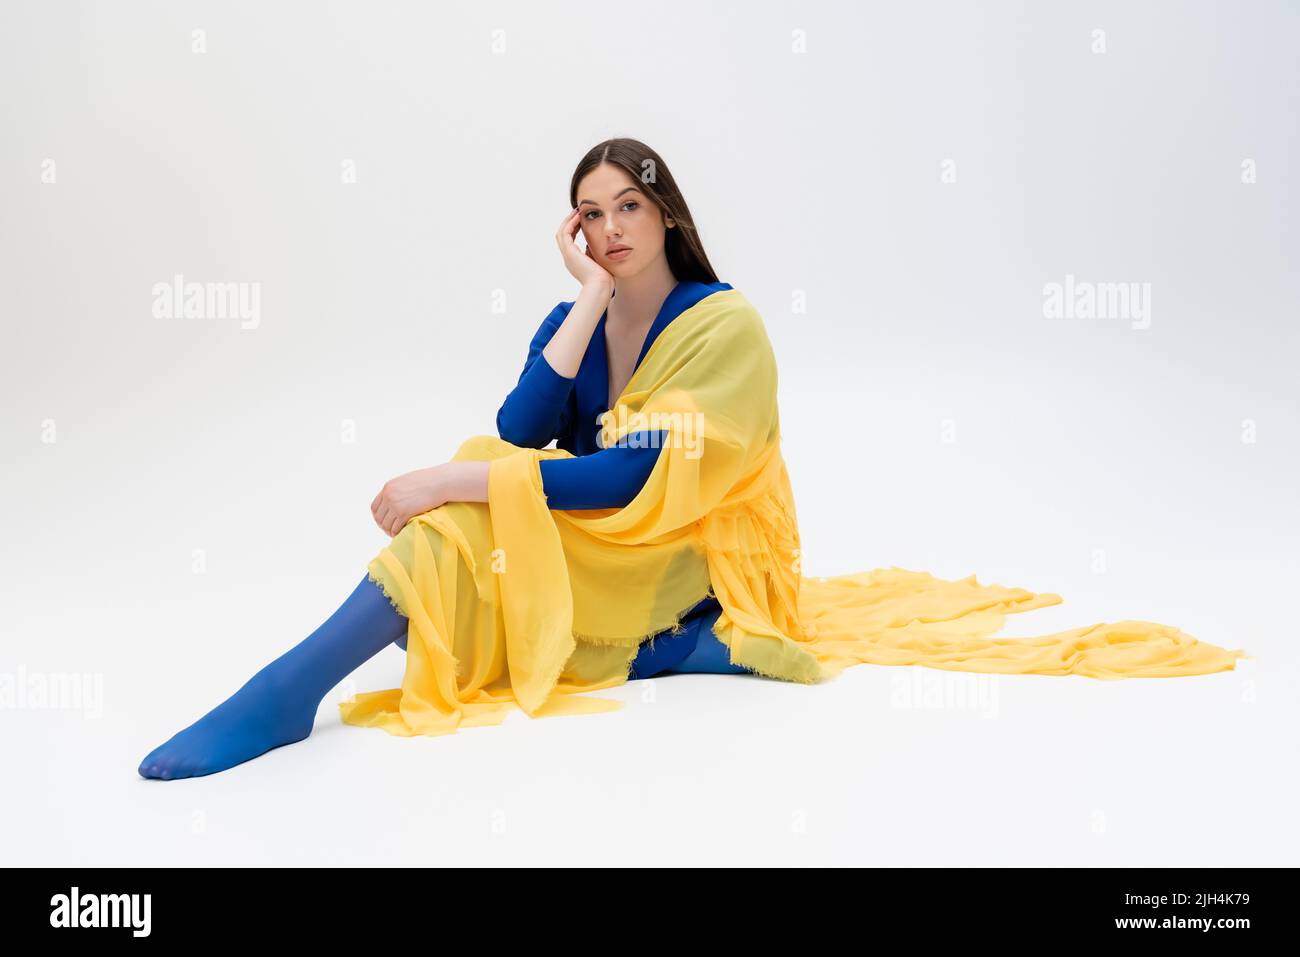 giovane donna ucraina sognante in abito blu e giallo con collant seduti in posa sul grigio Foto Stock